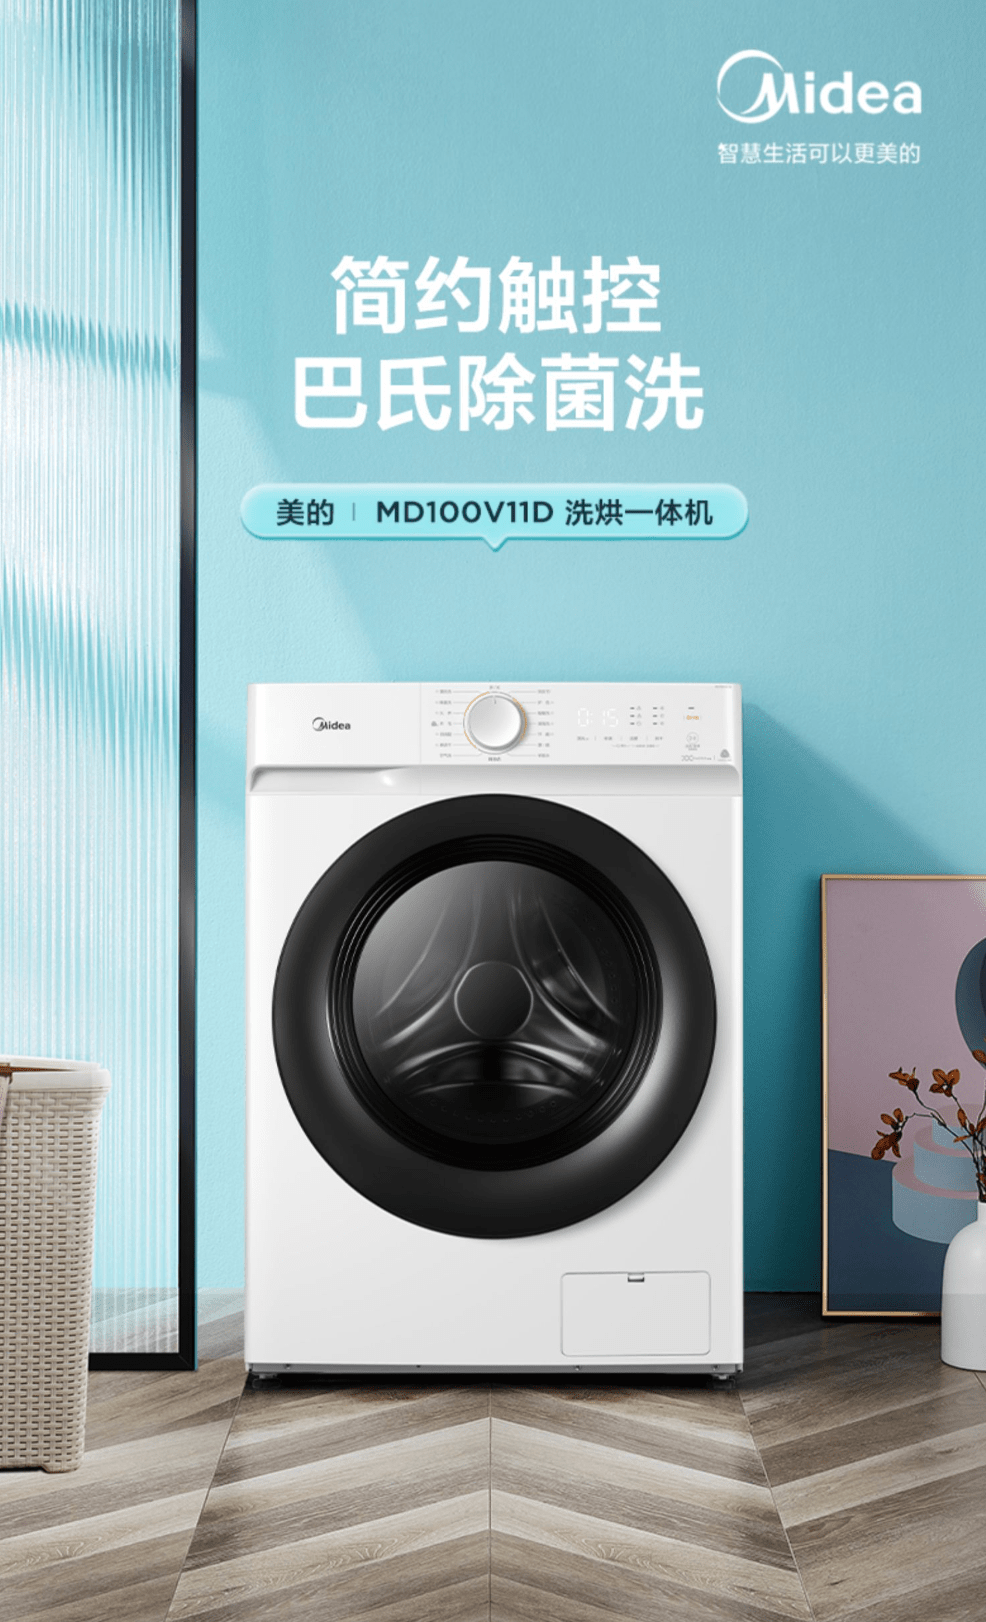 图3：美的某款洗衣机的详情页图